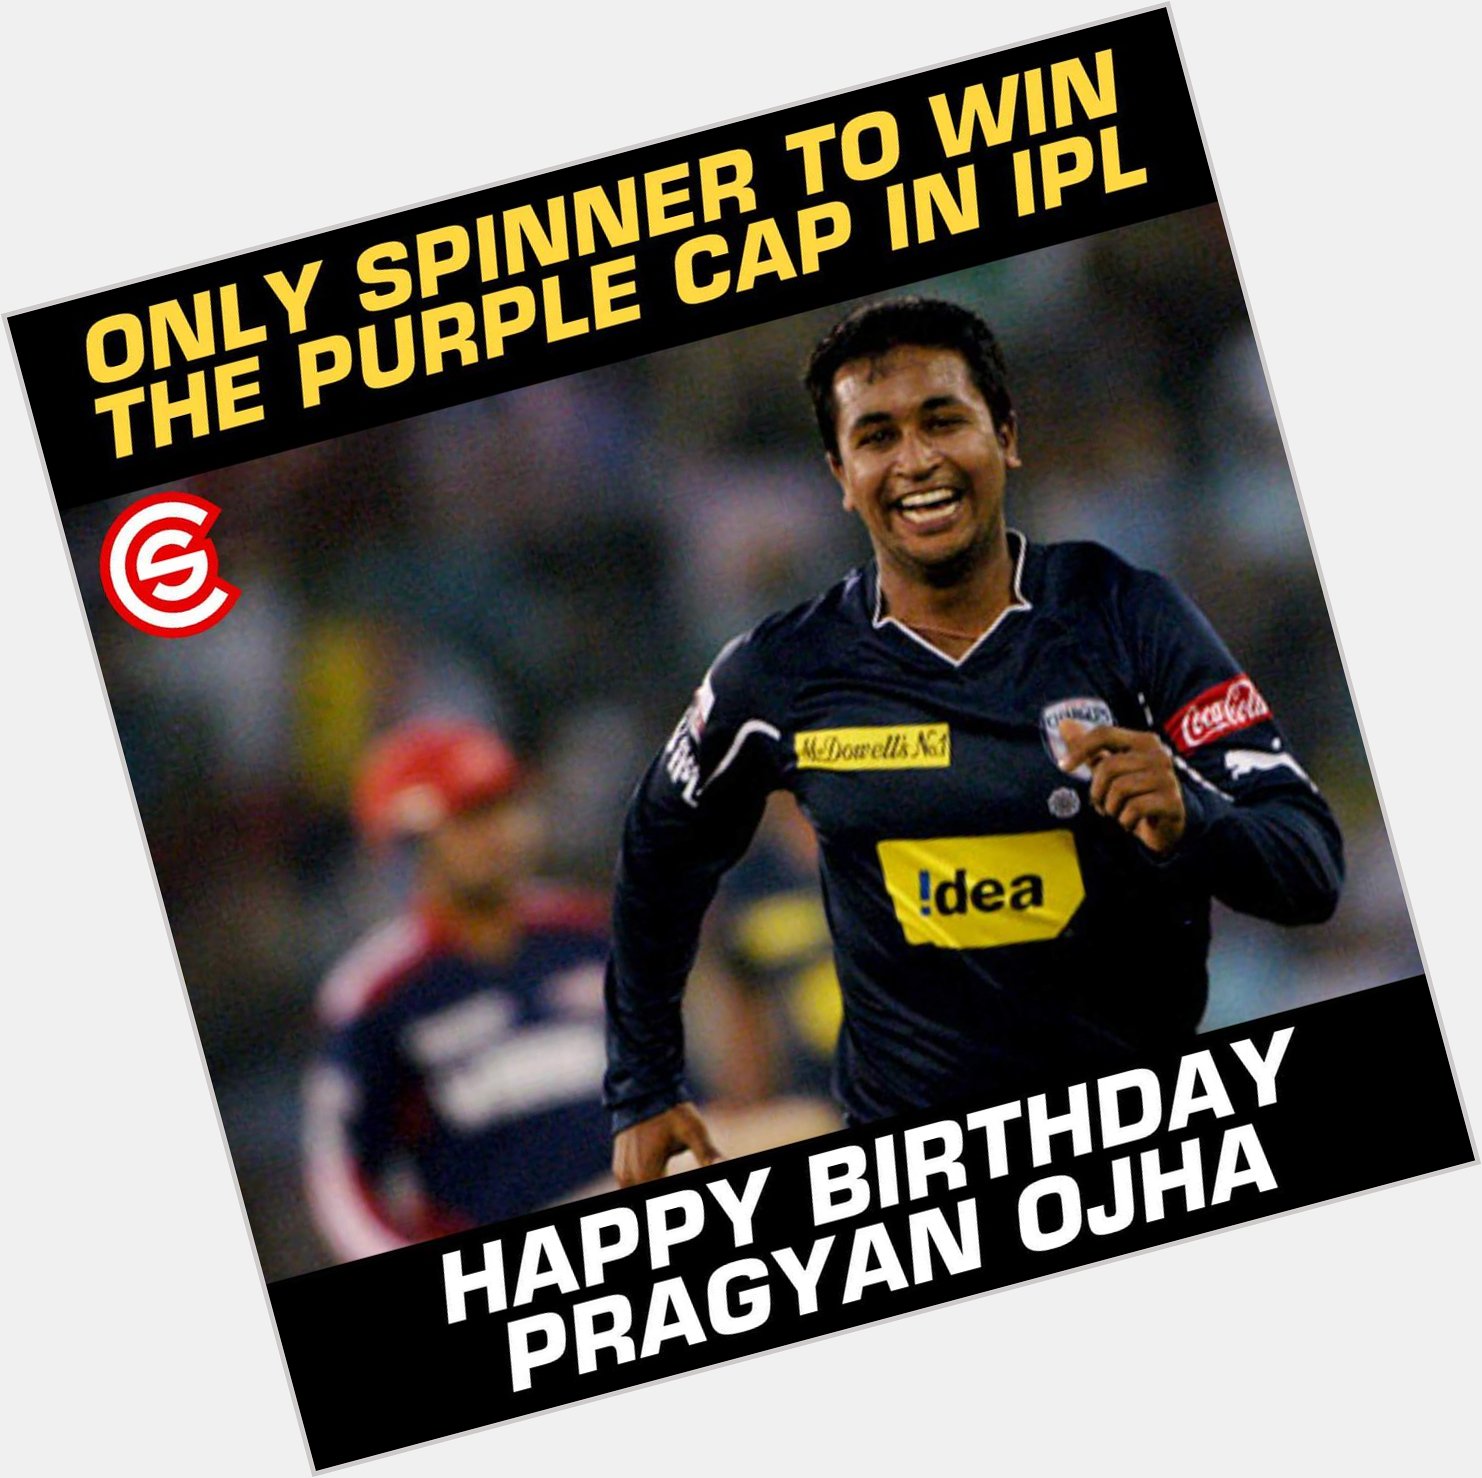 Happy Birthday, Pragyan Ojha!! 